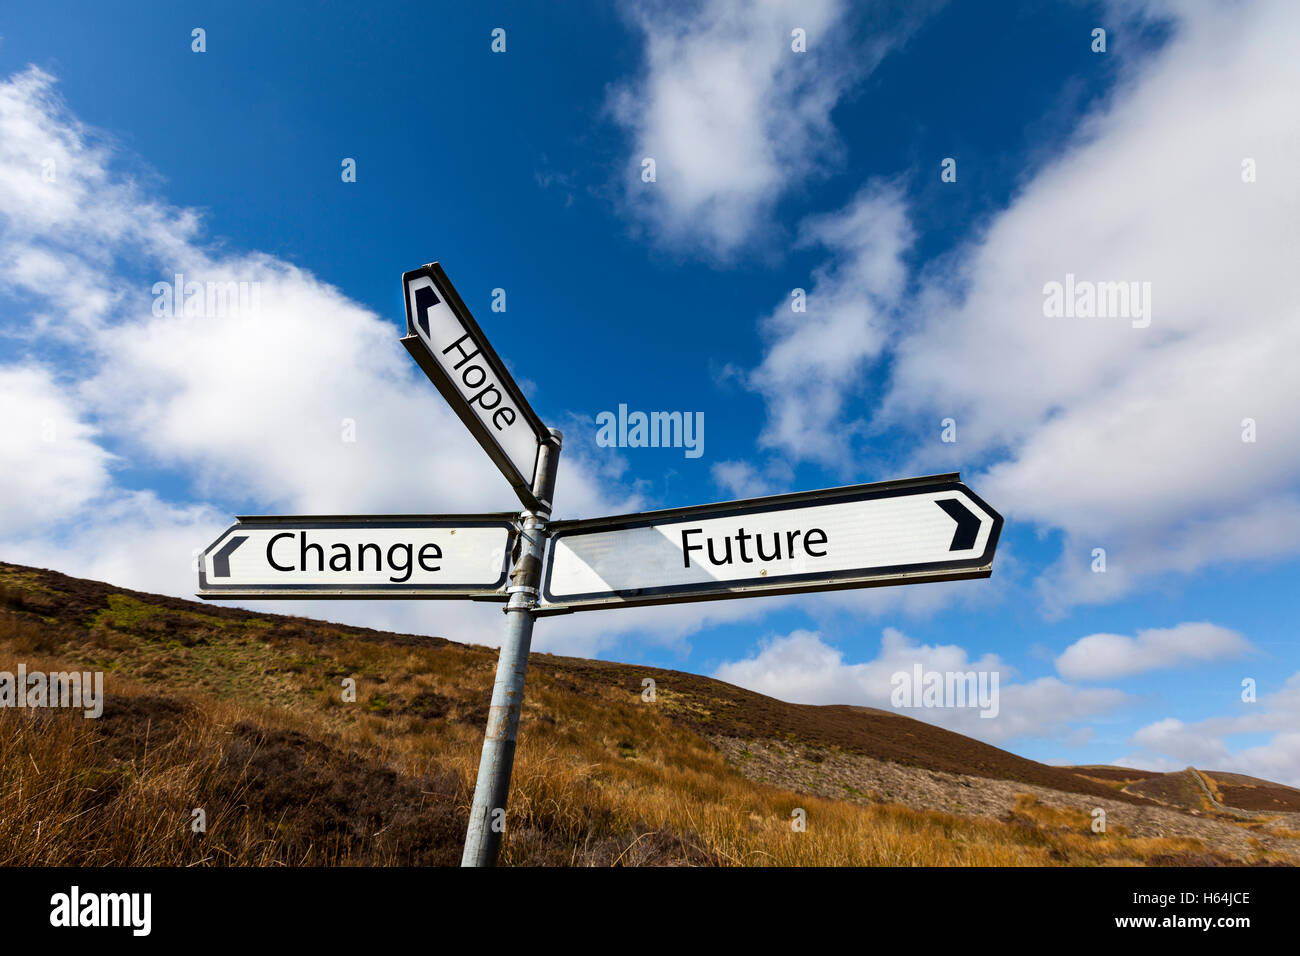 Changement futur espoir concept futur signer ayant l'espoir de vouloir changer les perspectives futures outlook UK GB Angleterre Banque D'Images